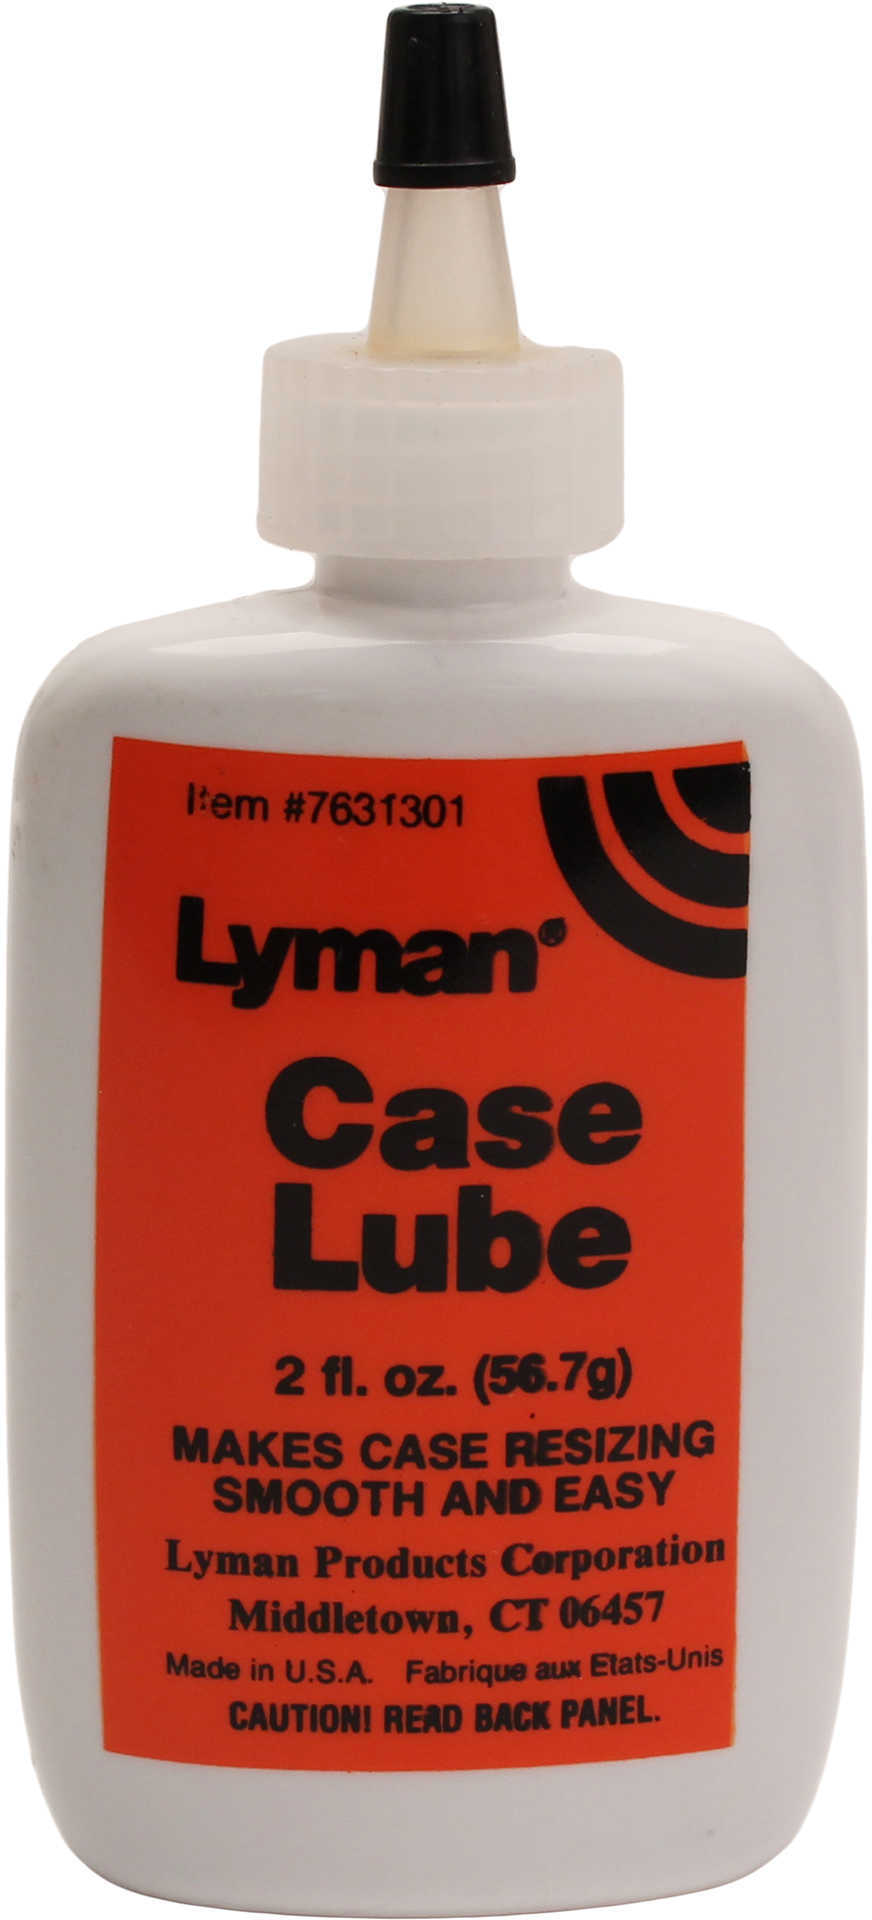 Lyman Case Lube Lubricant Only 2 Oz.